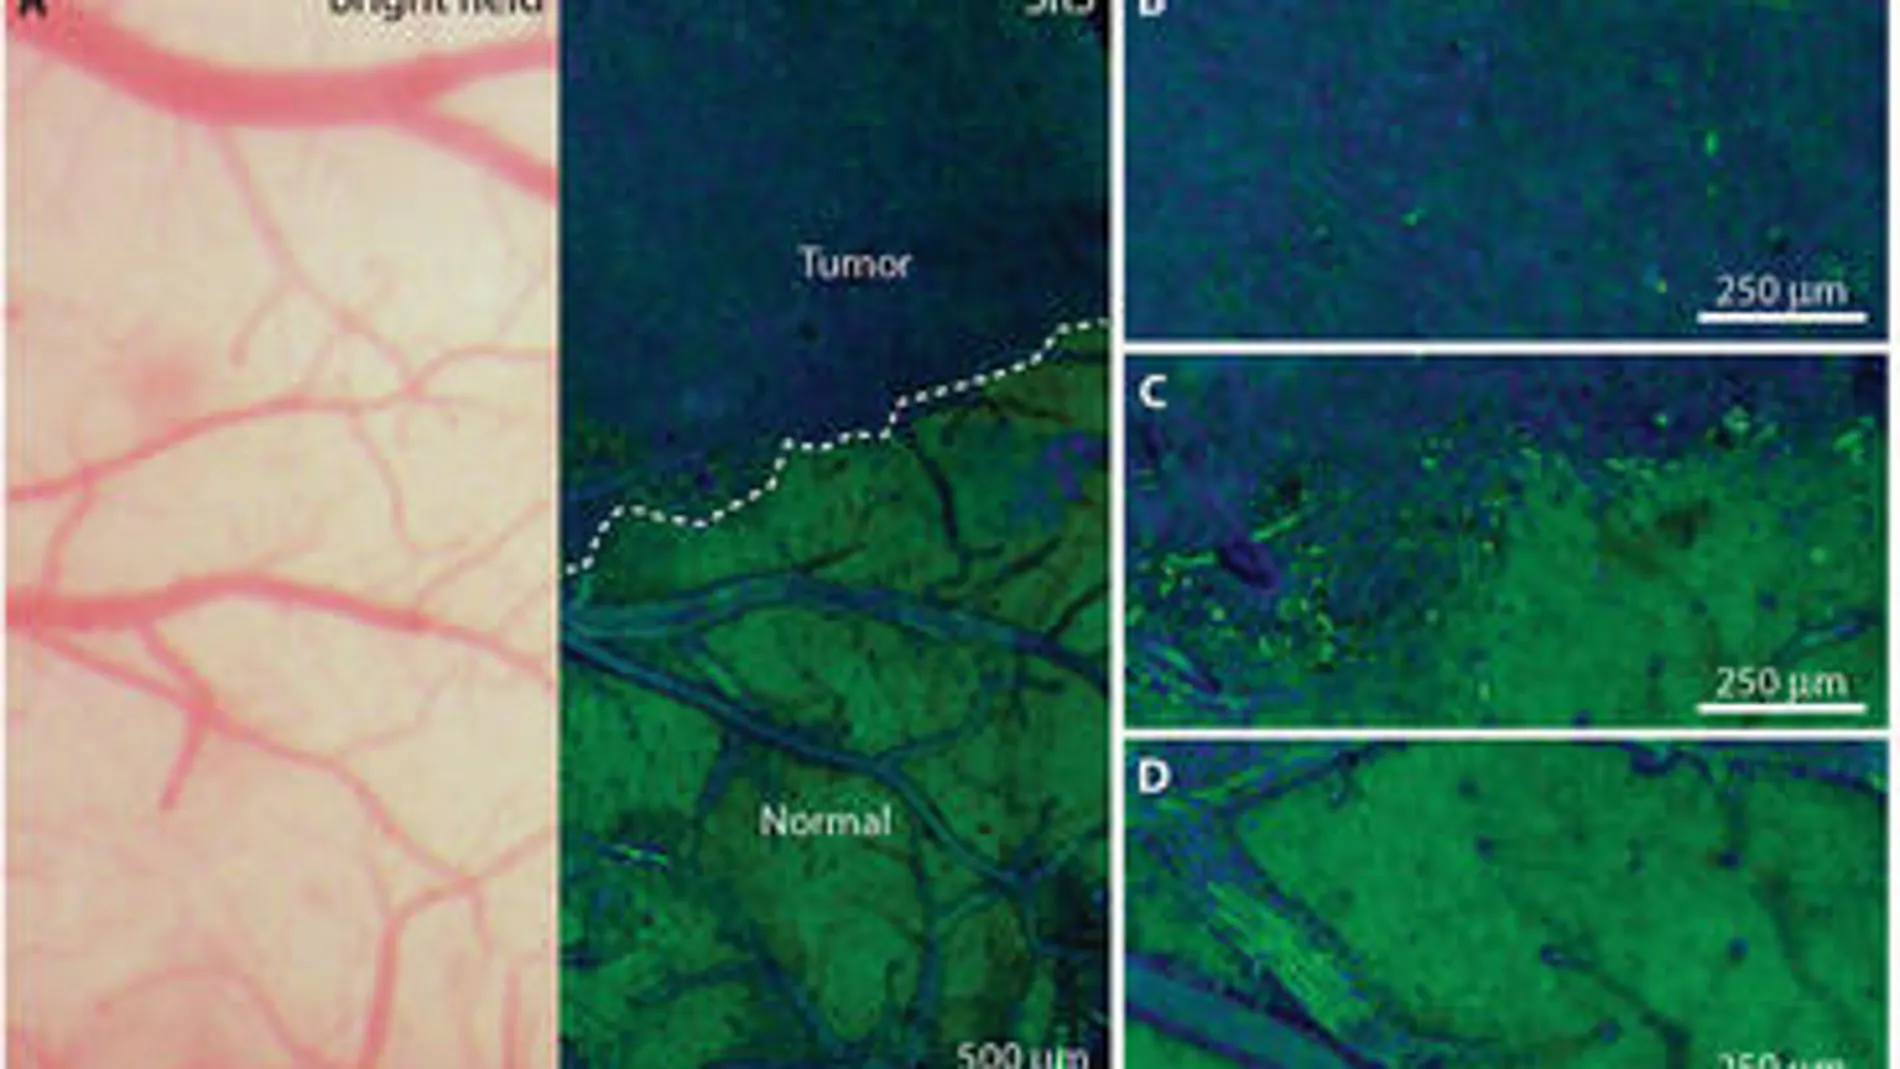 Comparación de dos imágenes de tejido cerebral canceroso, una obtenida con microscopía convencional (izquierda) y la otra mediante SRS (derecha). En la última se aprecian claramente los límites del área tumoral